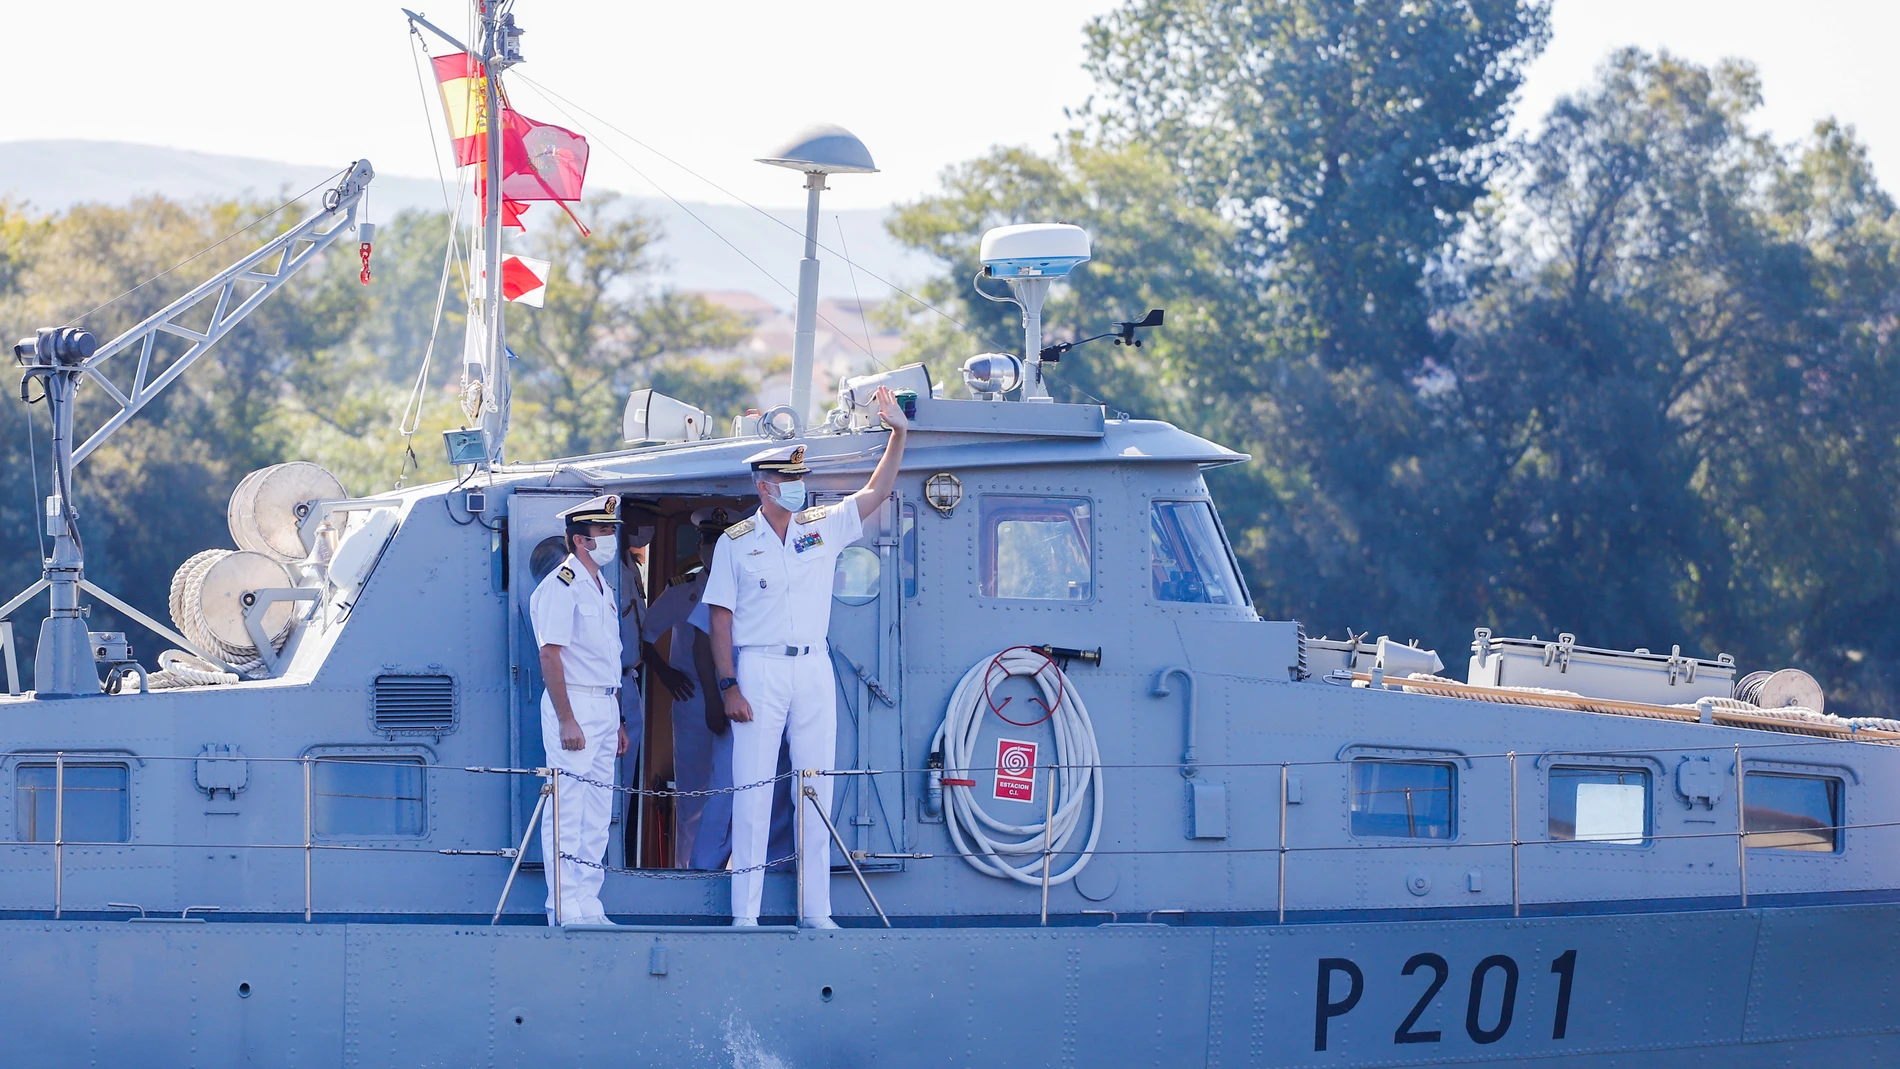 Felipe VI visita la Comandancia Naval del Miño en Tui